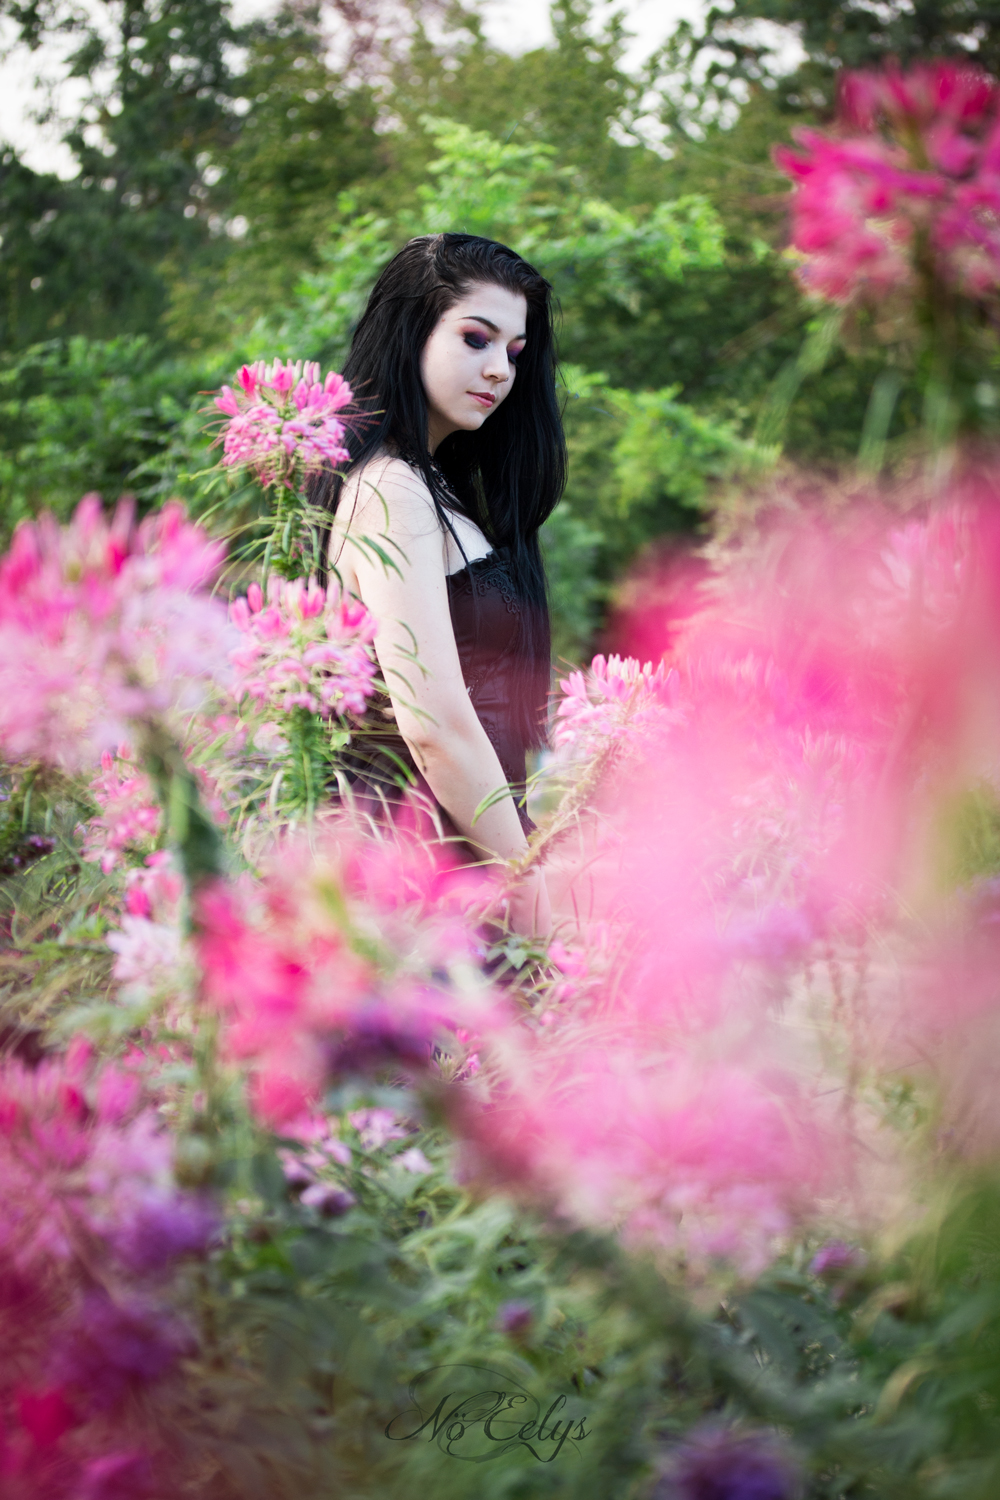 Portrait alternatif d'inspiration gothique romantique avec des fleurs, WhiteWolf modèle gothique alternative, photo par Nö Eelys